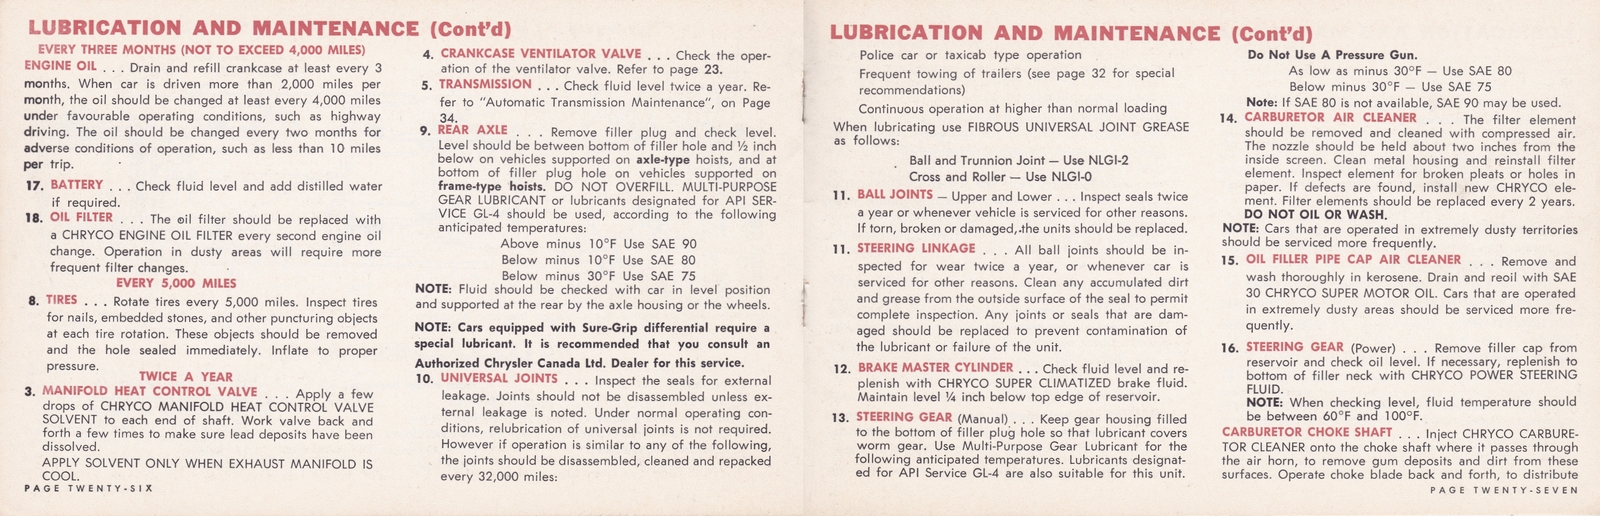 n_1964 Chrysler Owner's Manual (Cdn)-26-27.jpg